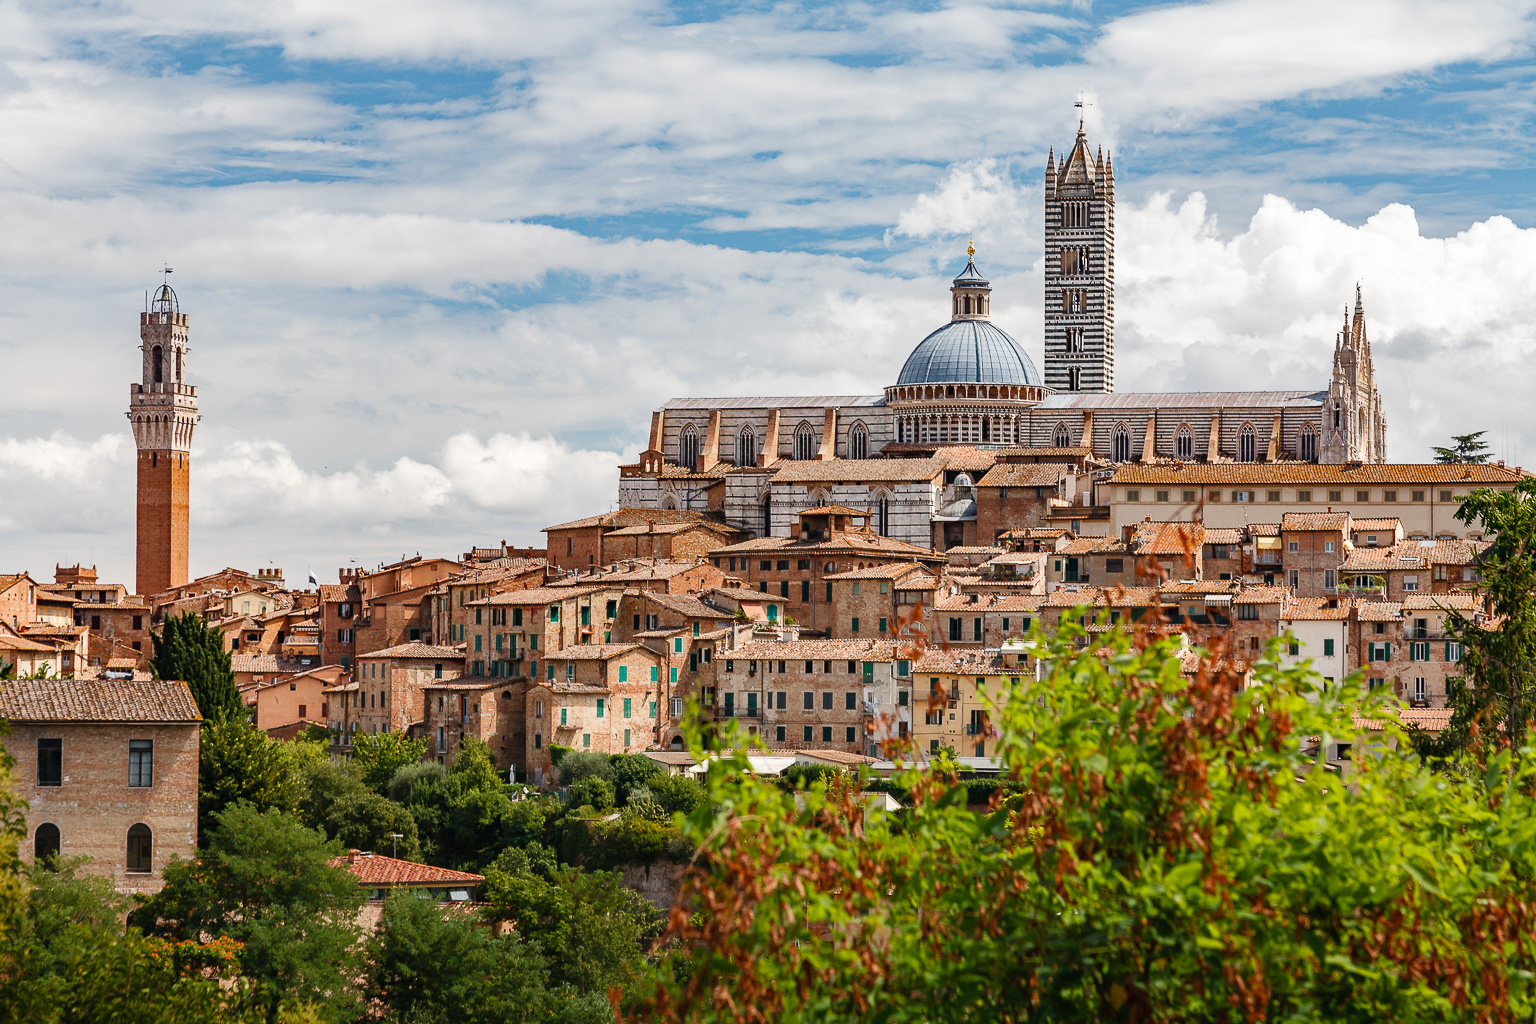 Blick auf den Dom und die Altstadt  Siena Toscana Italien by Peter Ehlert in Siena auf der Durchreise